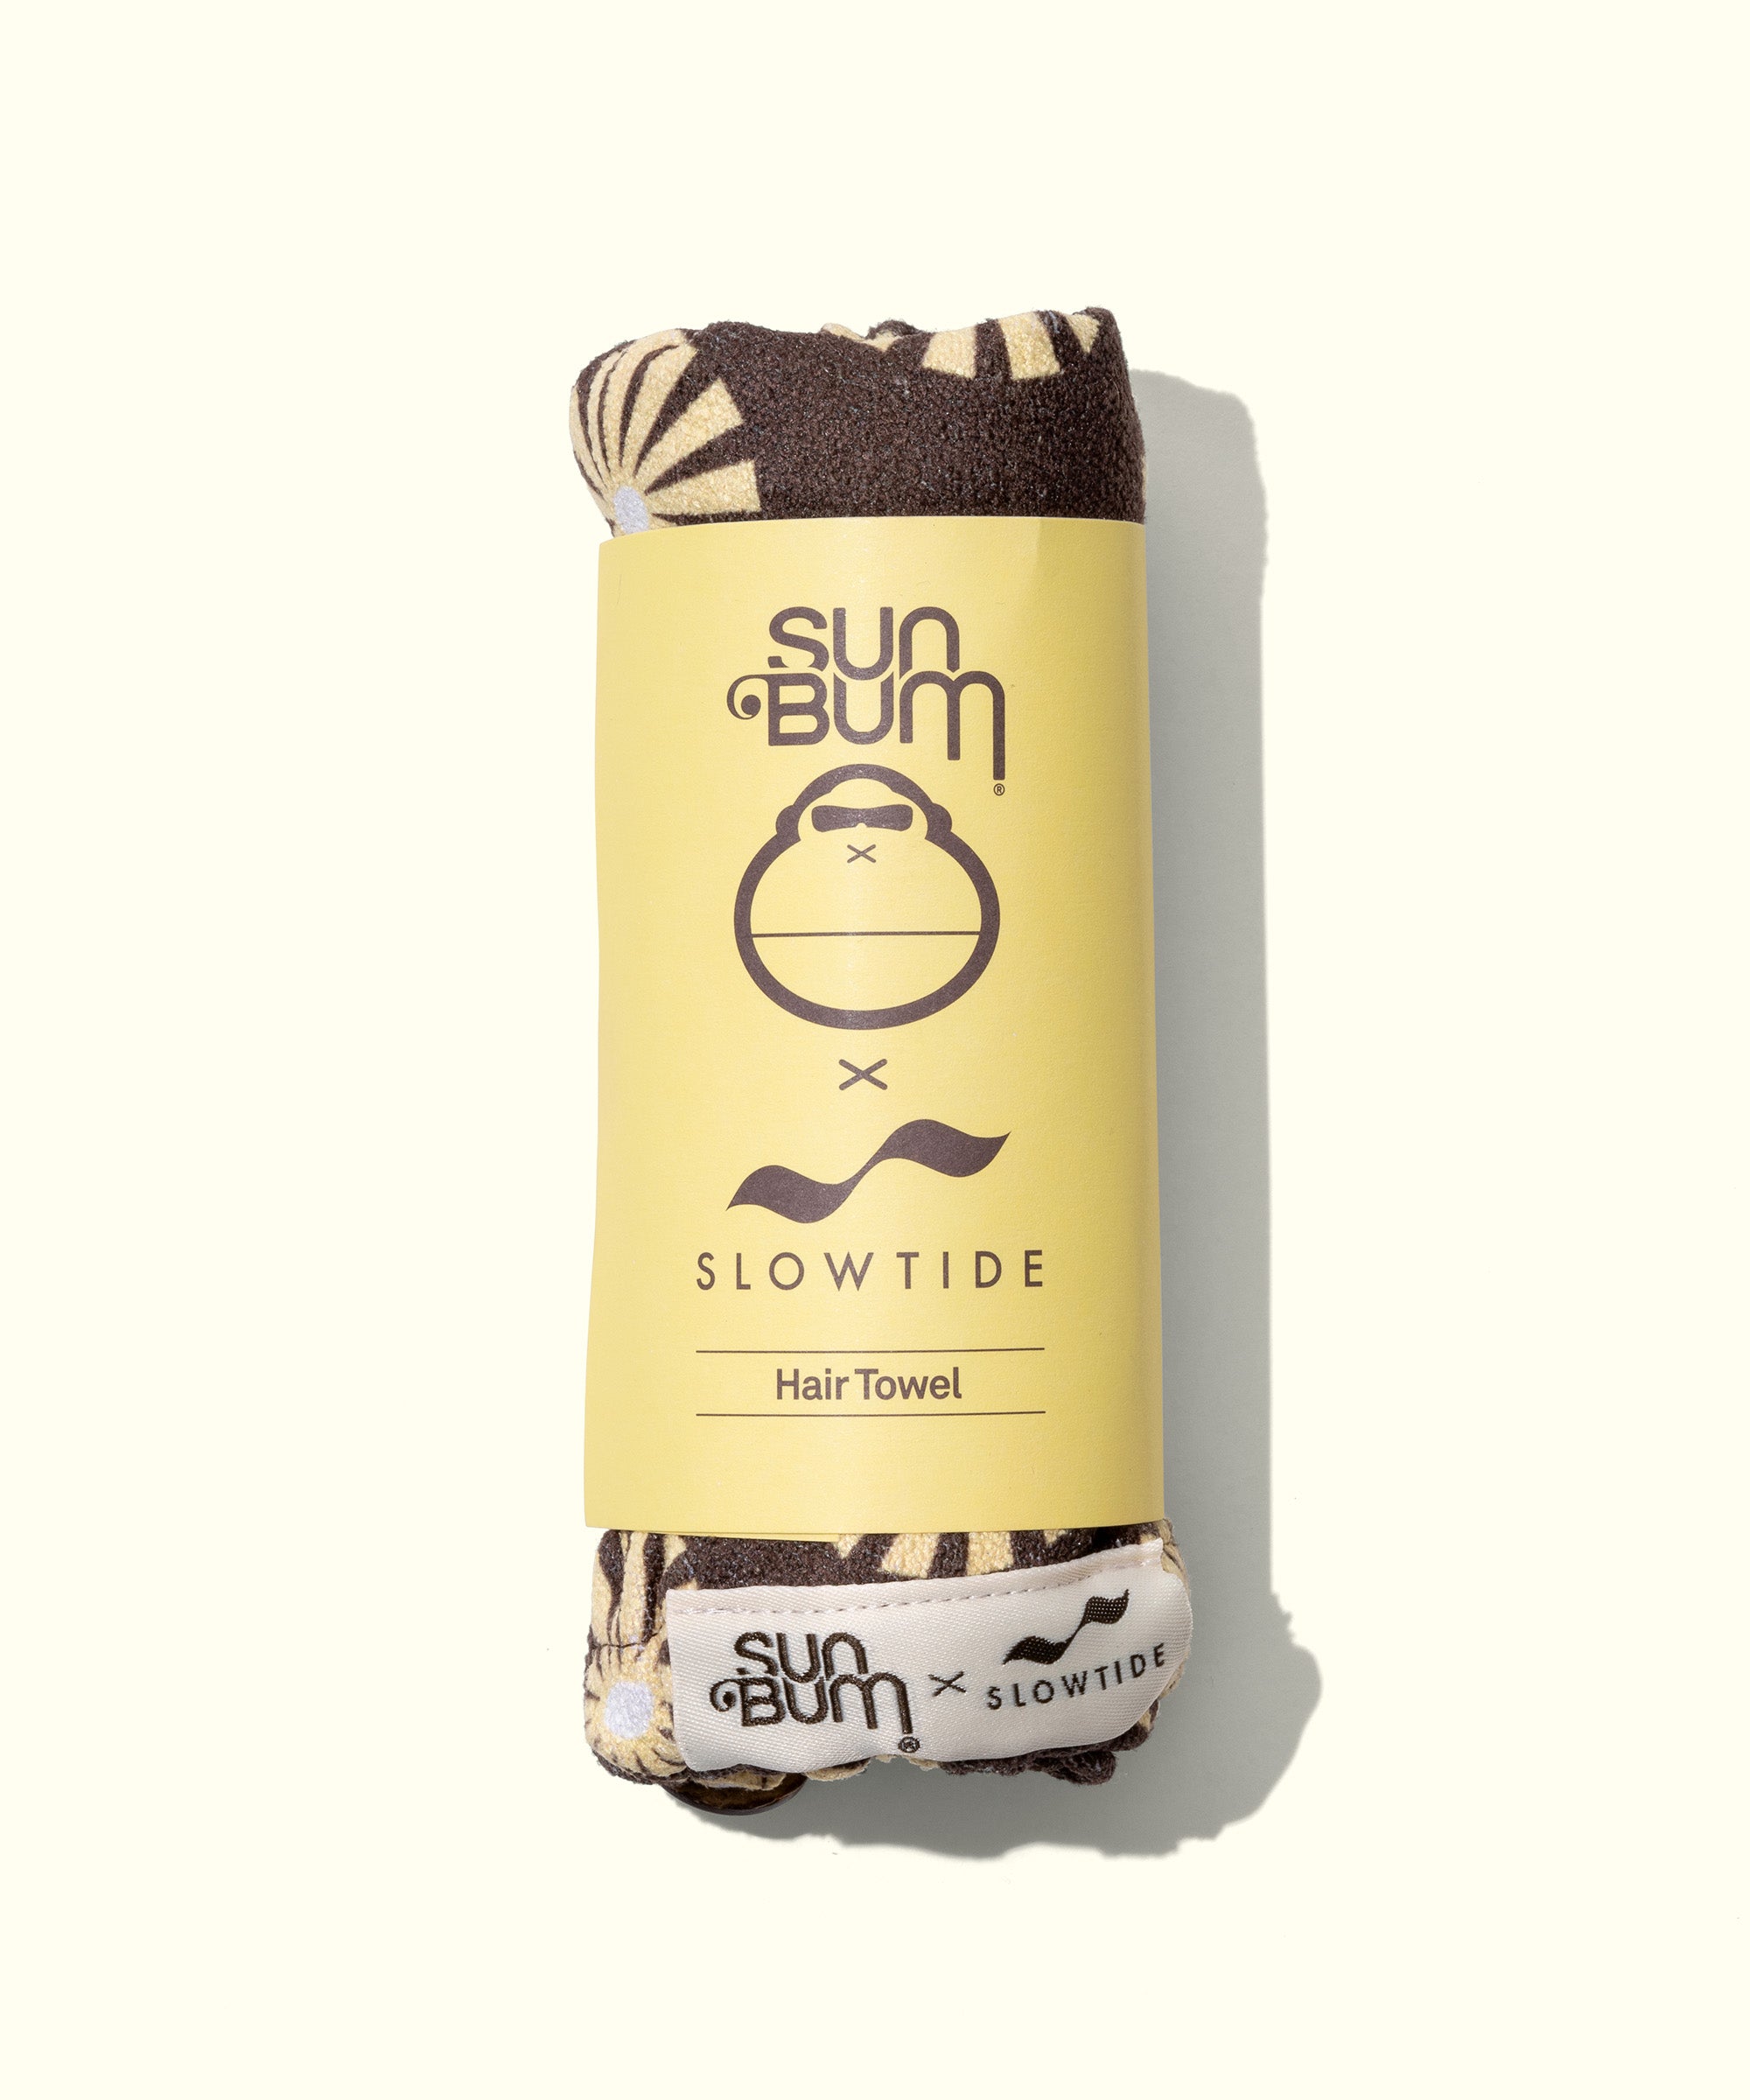 SB x Slowtide Limited Edition Hair Towel